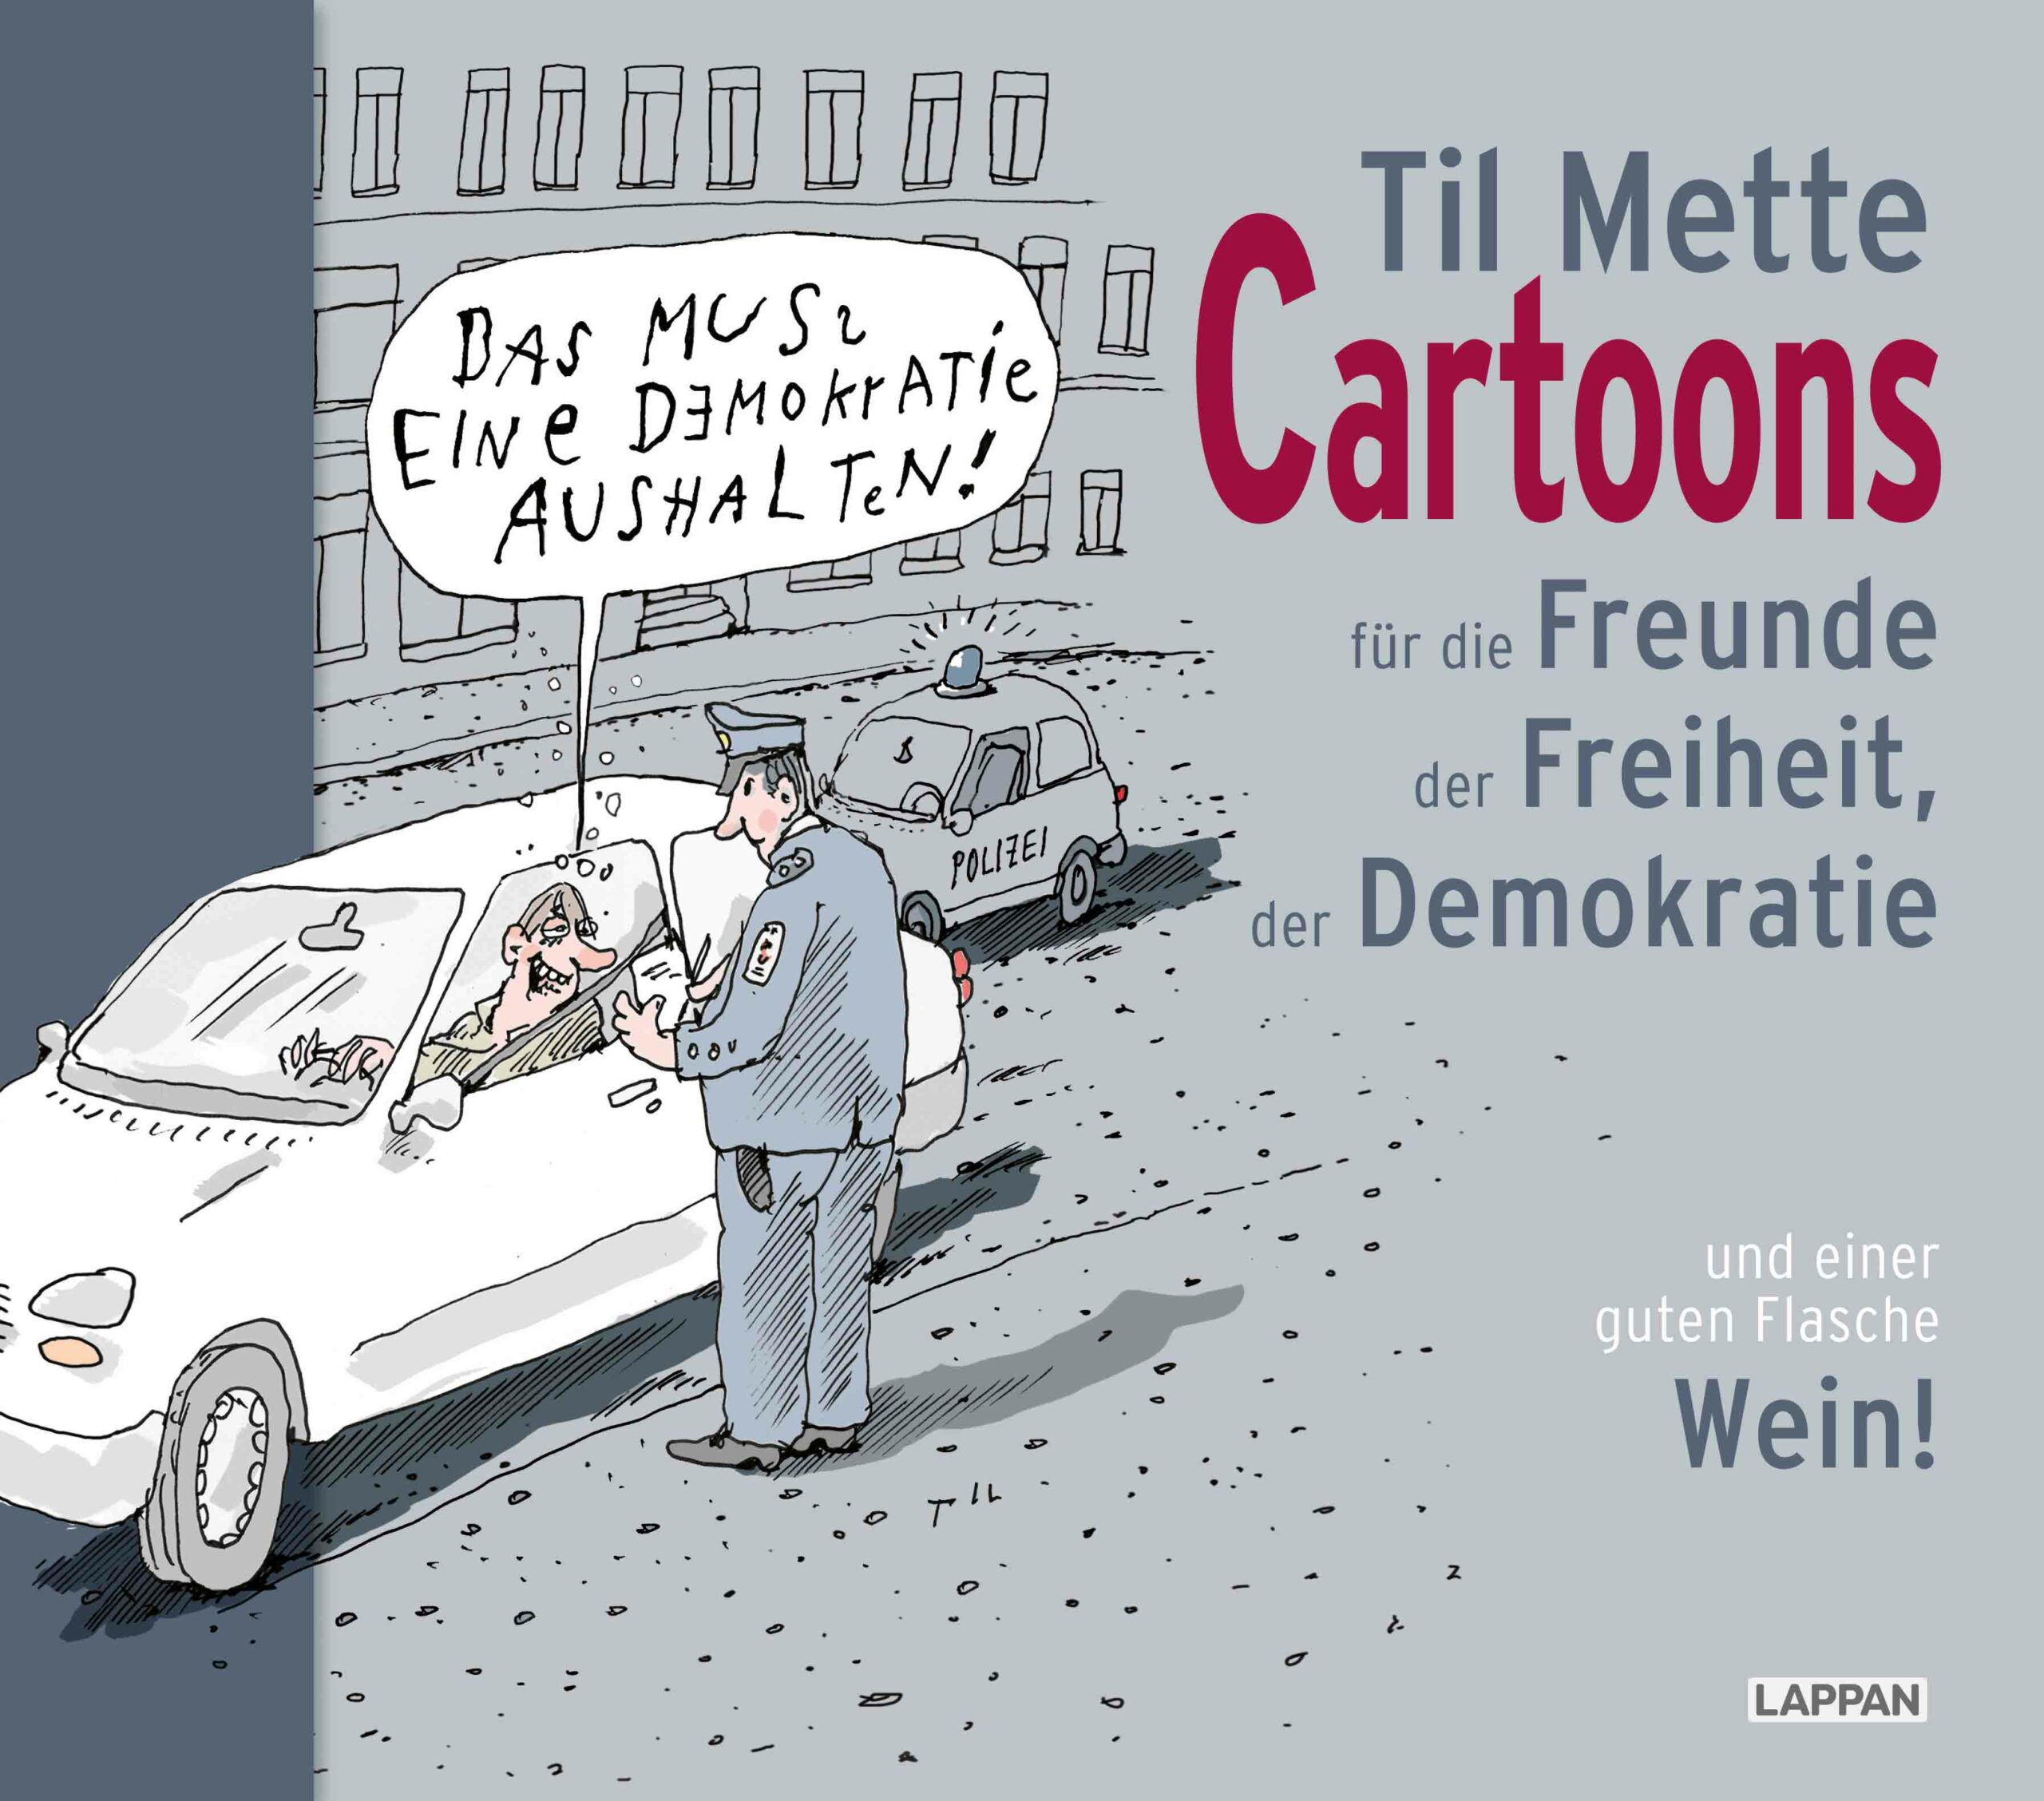 Til Mette Cartoons für Freunde der Freiheit, der Demokratie und einer guten Flasche Wein